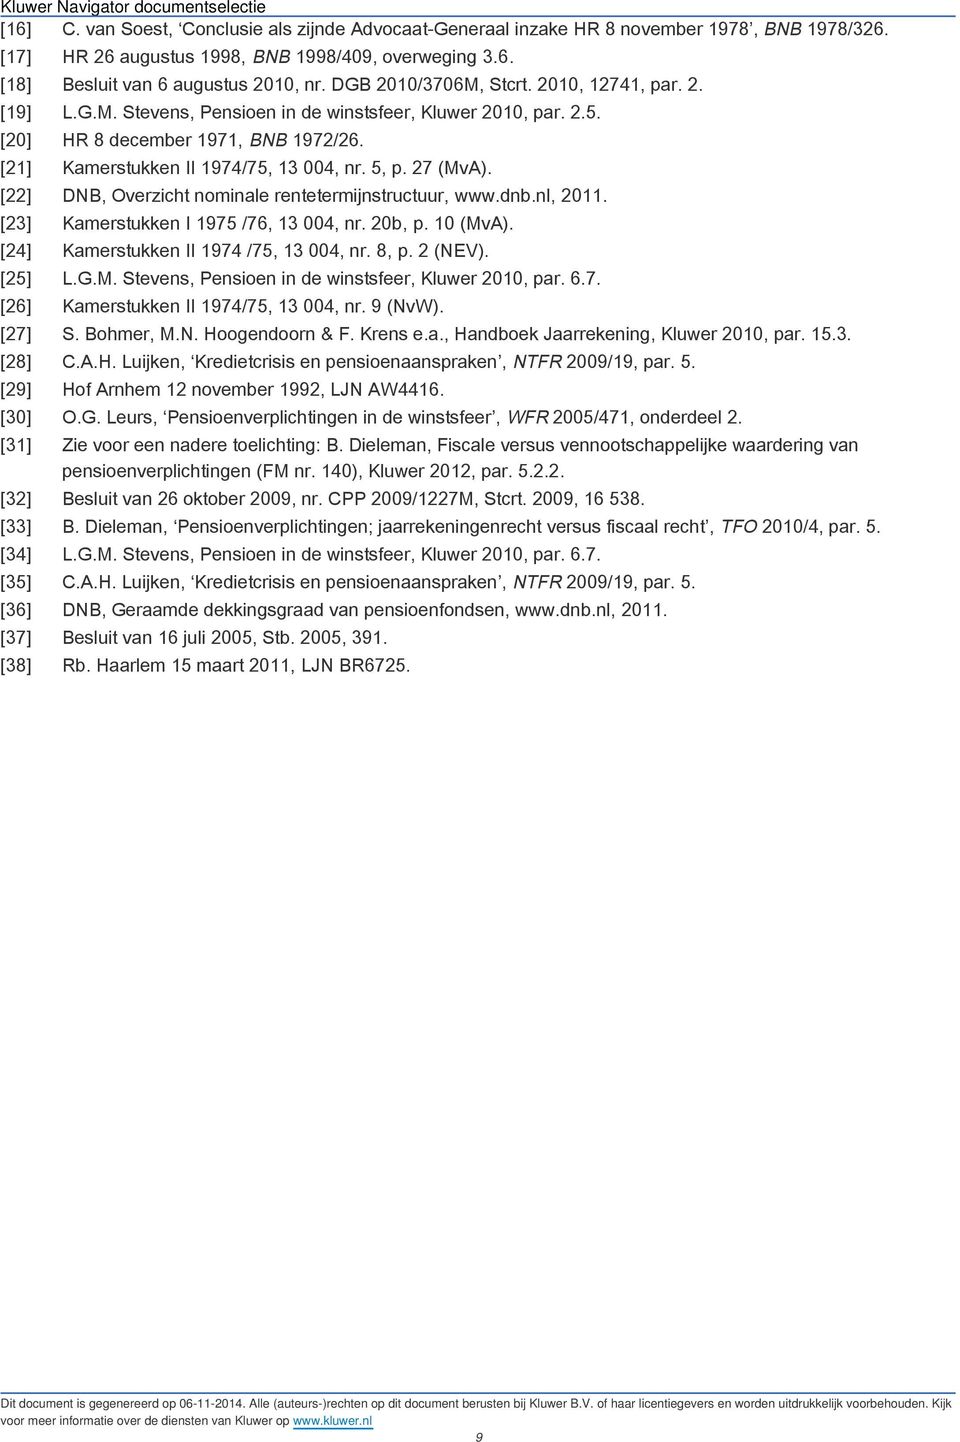 27 (MvA). [22] DNB, Overzicht nominale rentetermijnstructuur, www.dnb.nl, 2011. [23] Kamerstukken I 1975 /76, 13 004, nr. 20b, p. 10 (MvA). [24] Kamerstukken II 1974 /75, 13 004, nr. 8, p. 2 (NEV).